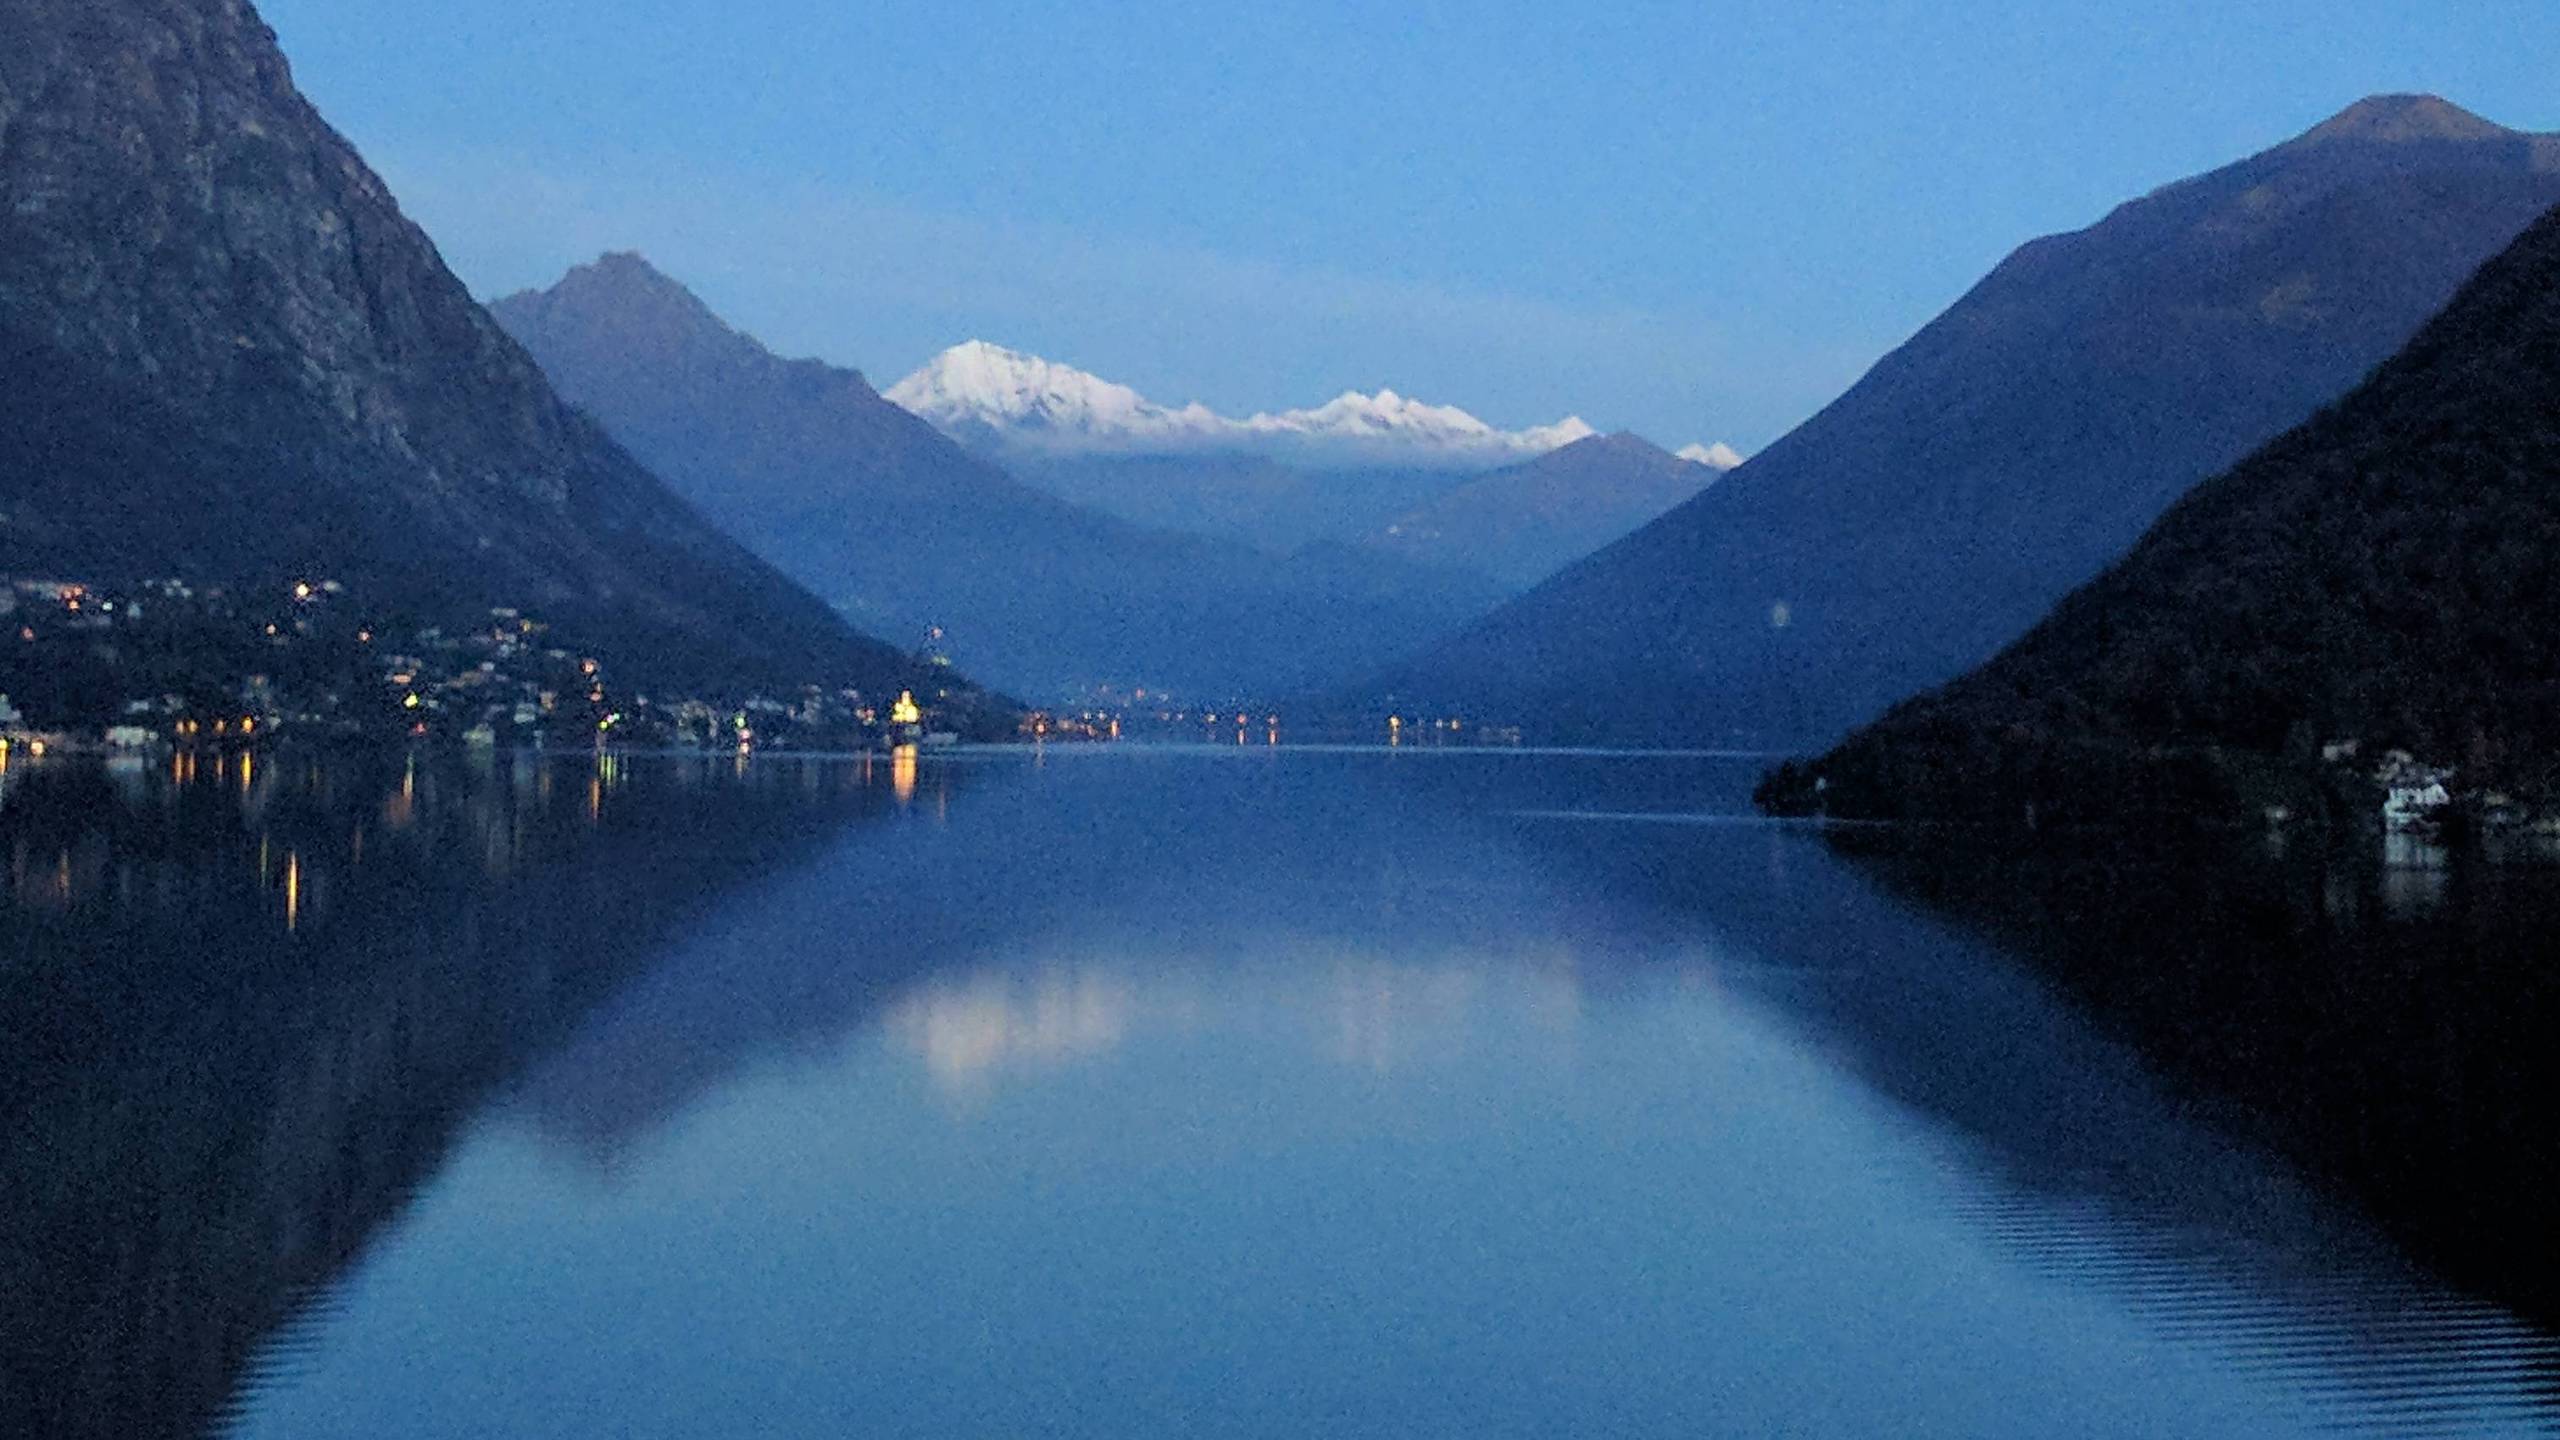 Lake Lugano, Switzerland view from a gas station tonight